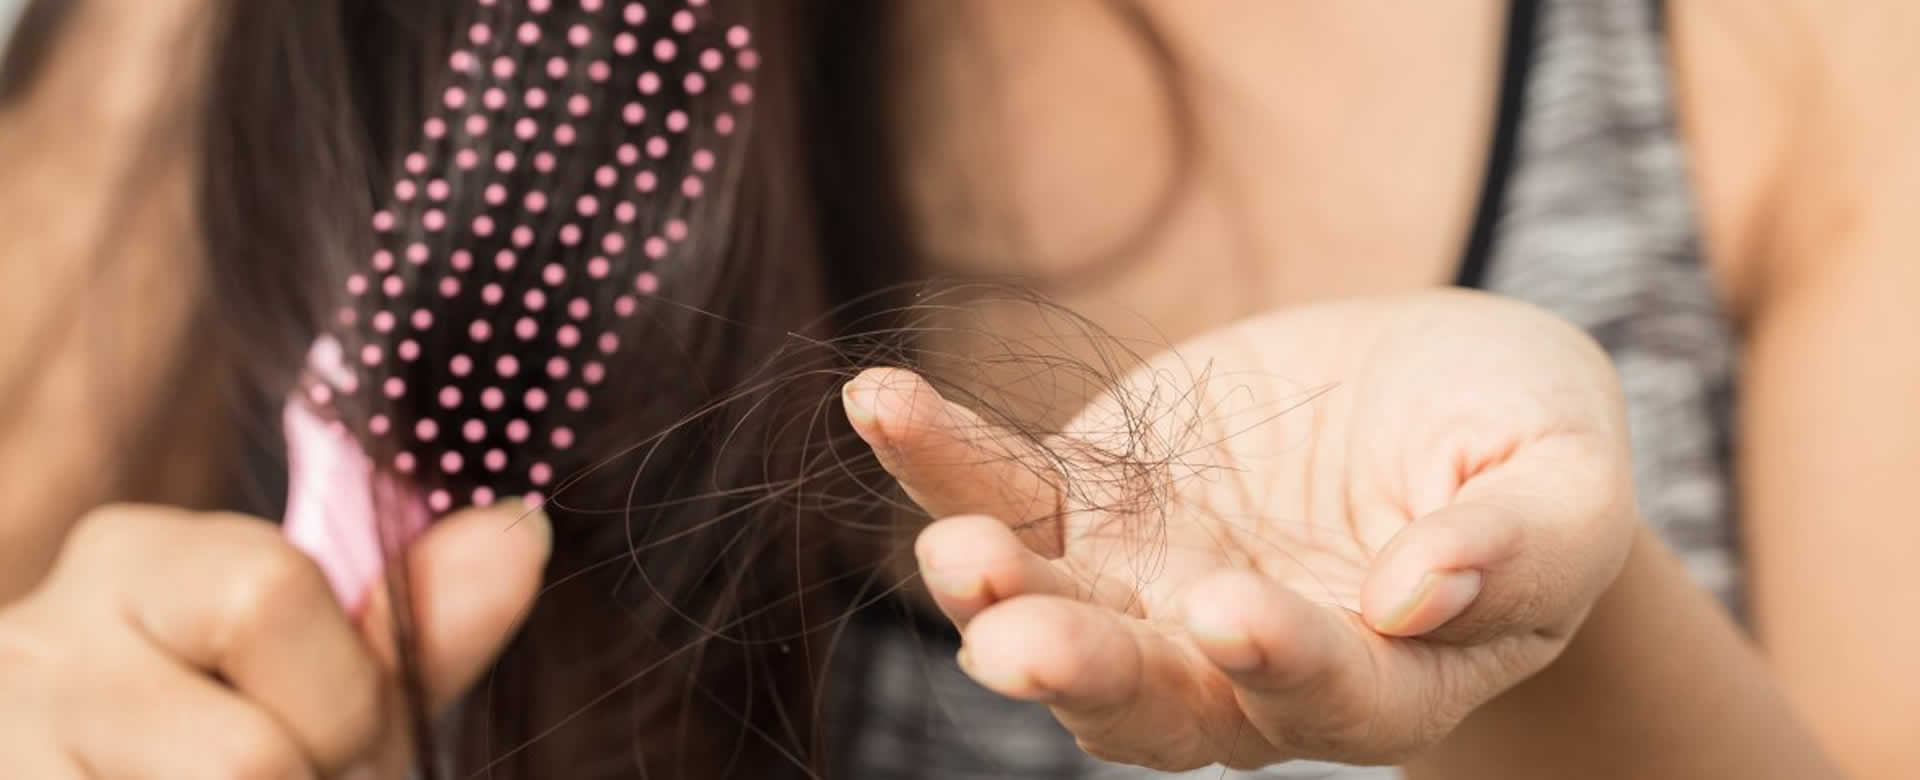 Caída abundante de cabello mientras una mujer se peina.